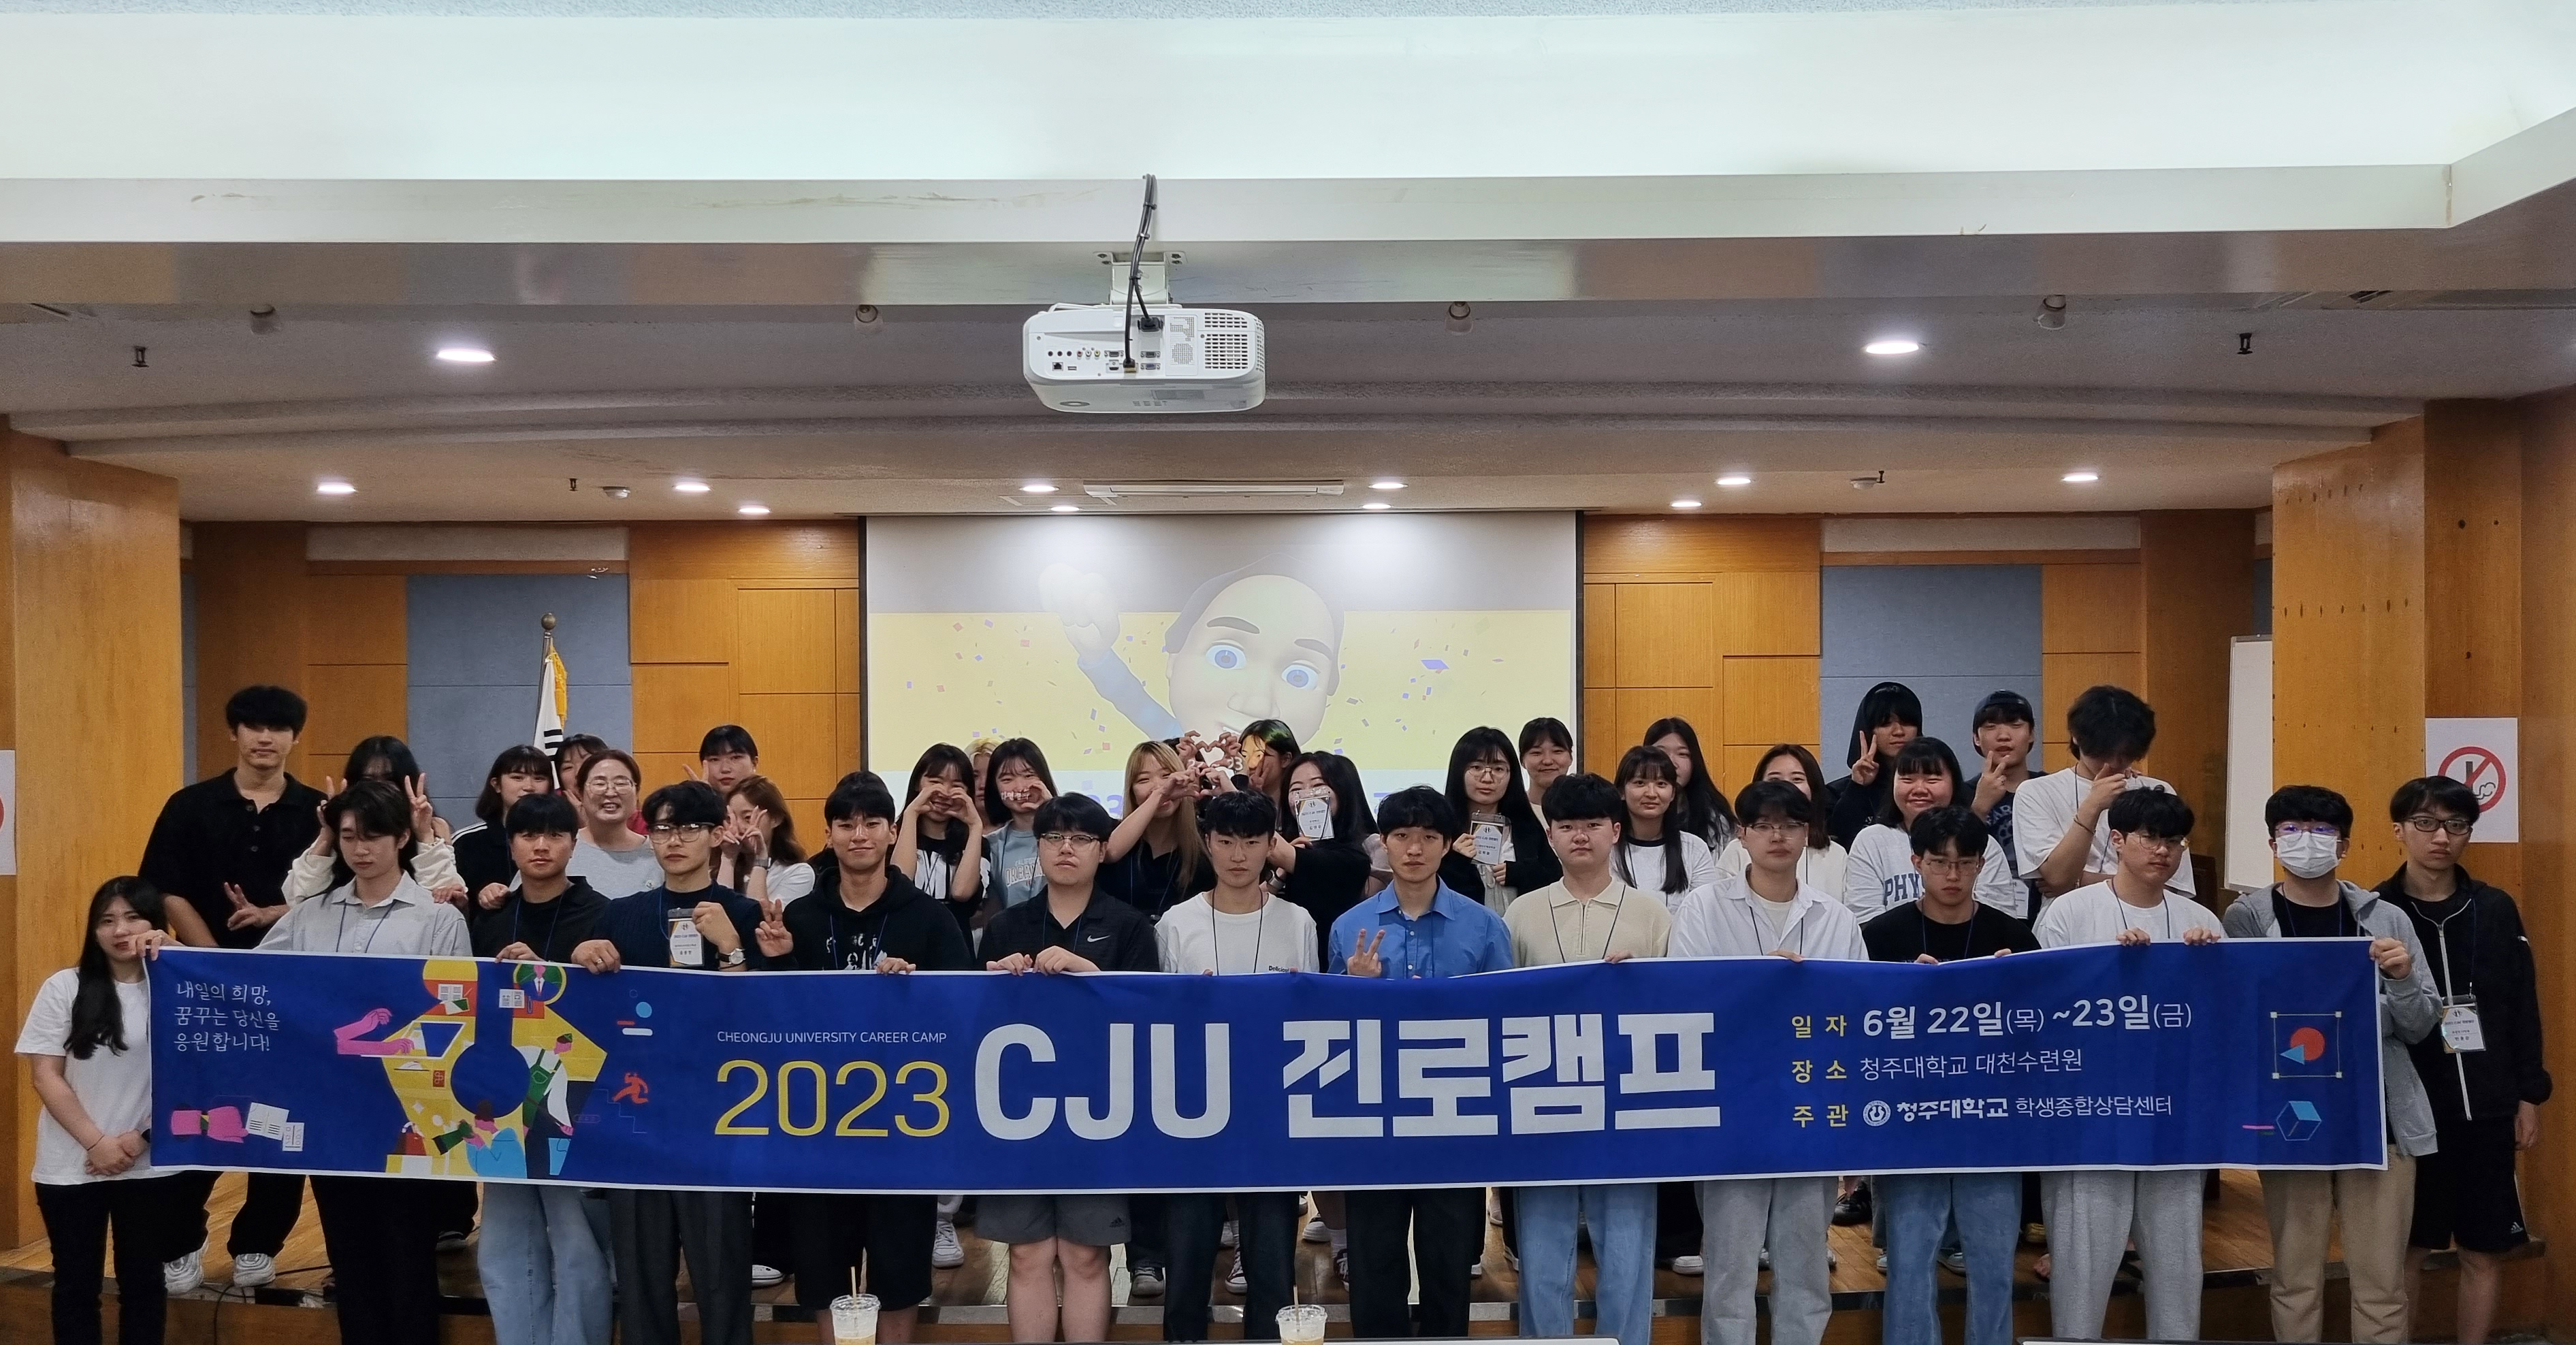 청주대학교는 대학 수련시설인 대천수련원에서 ‘2023 CJU 진로캠프’를 운영했다.